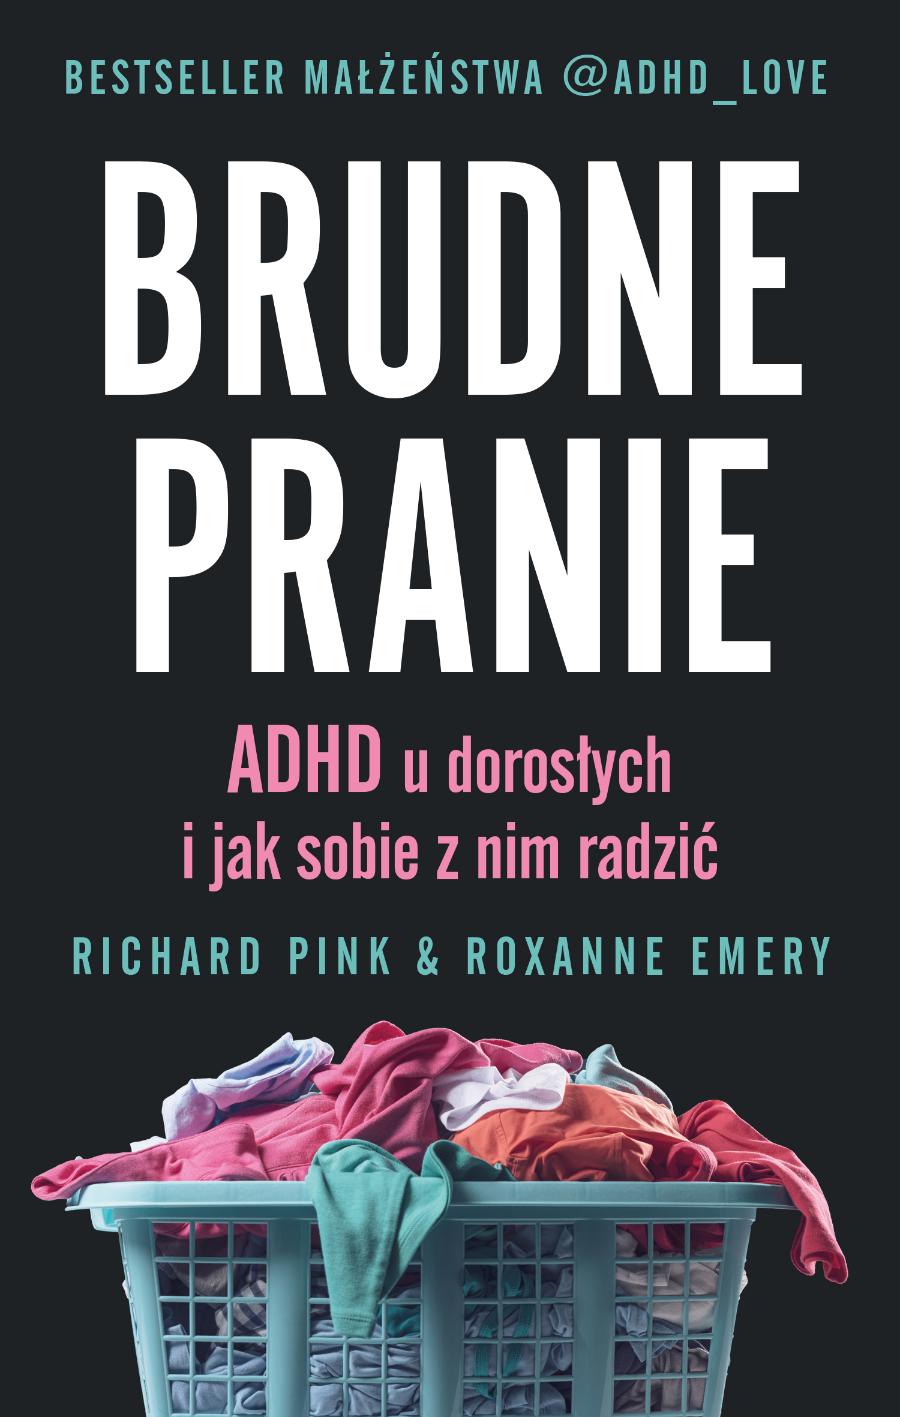 Polecamy książkę „Brudne pranie. ADHD u dorosłych i jak sobie z nim radzić”, Richard Pink, Roxanne Emery, tłum. Katarzyna Dudzik, wyd. Insignis.